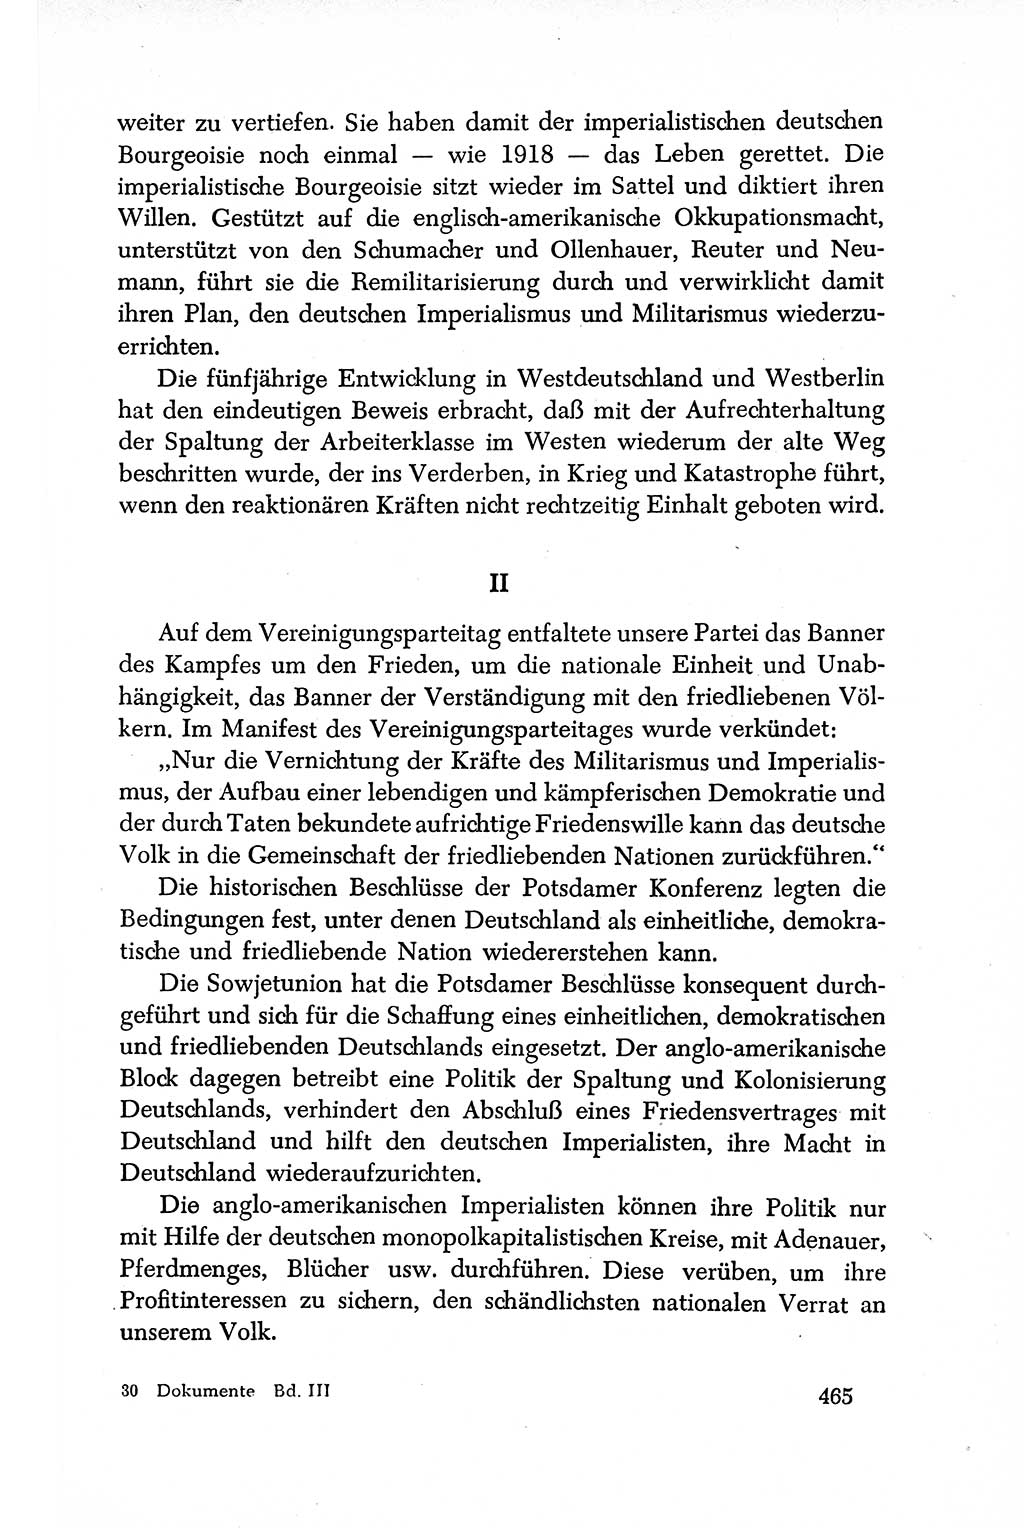 Dokumente der Sozialistischen Einheitspartei Deutschlands (SED) [Deutsche Demokratische Republik (DDR)] 1950-1952, Seite 465 (Dok. SED DDR 1950-1952, S. 465)